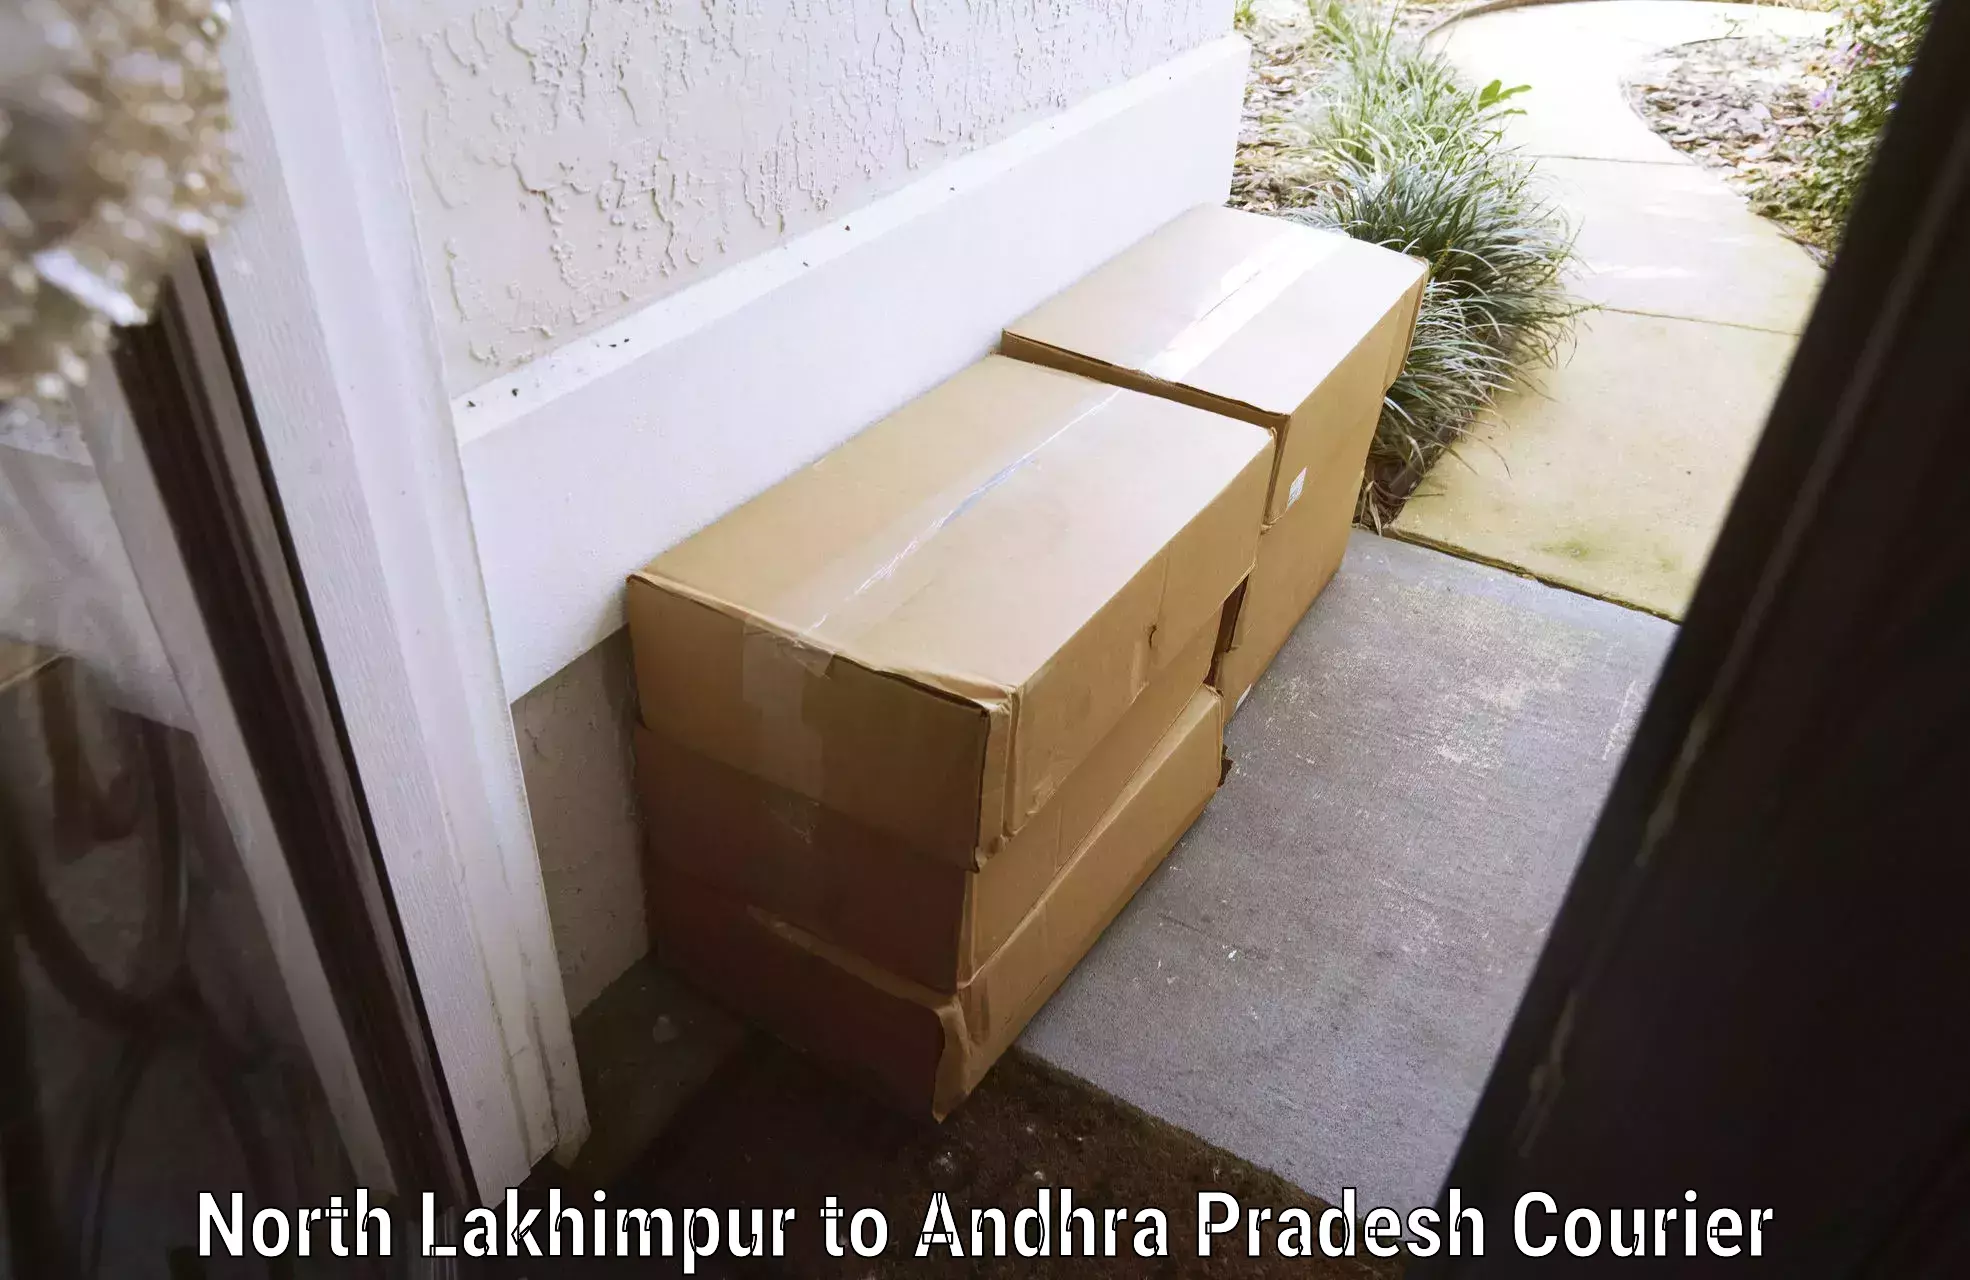 Luggage transport service North Lakhimpur to Andhra Pradesh